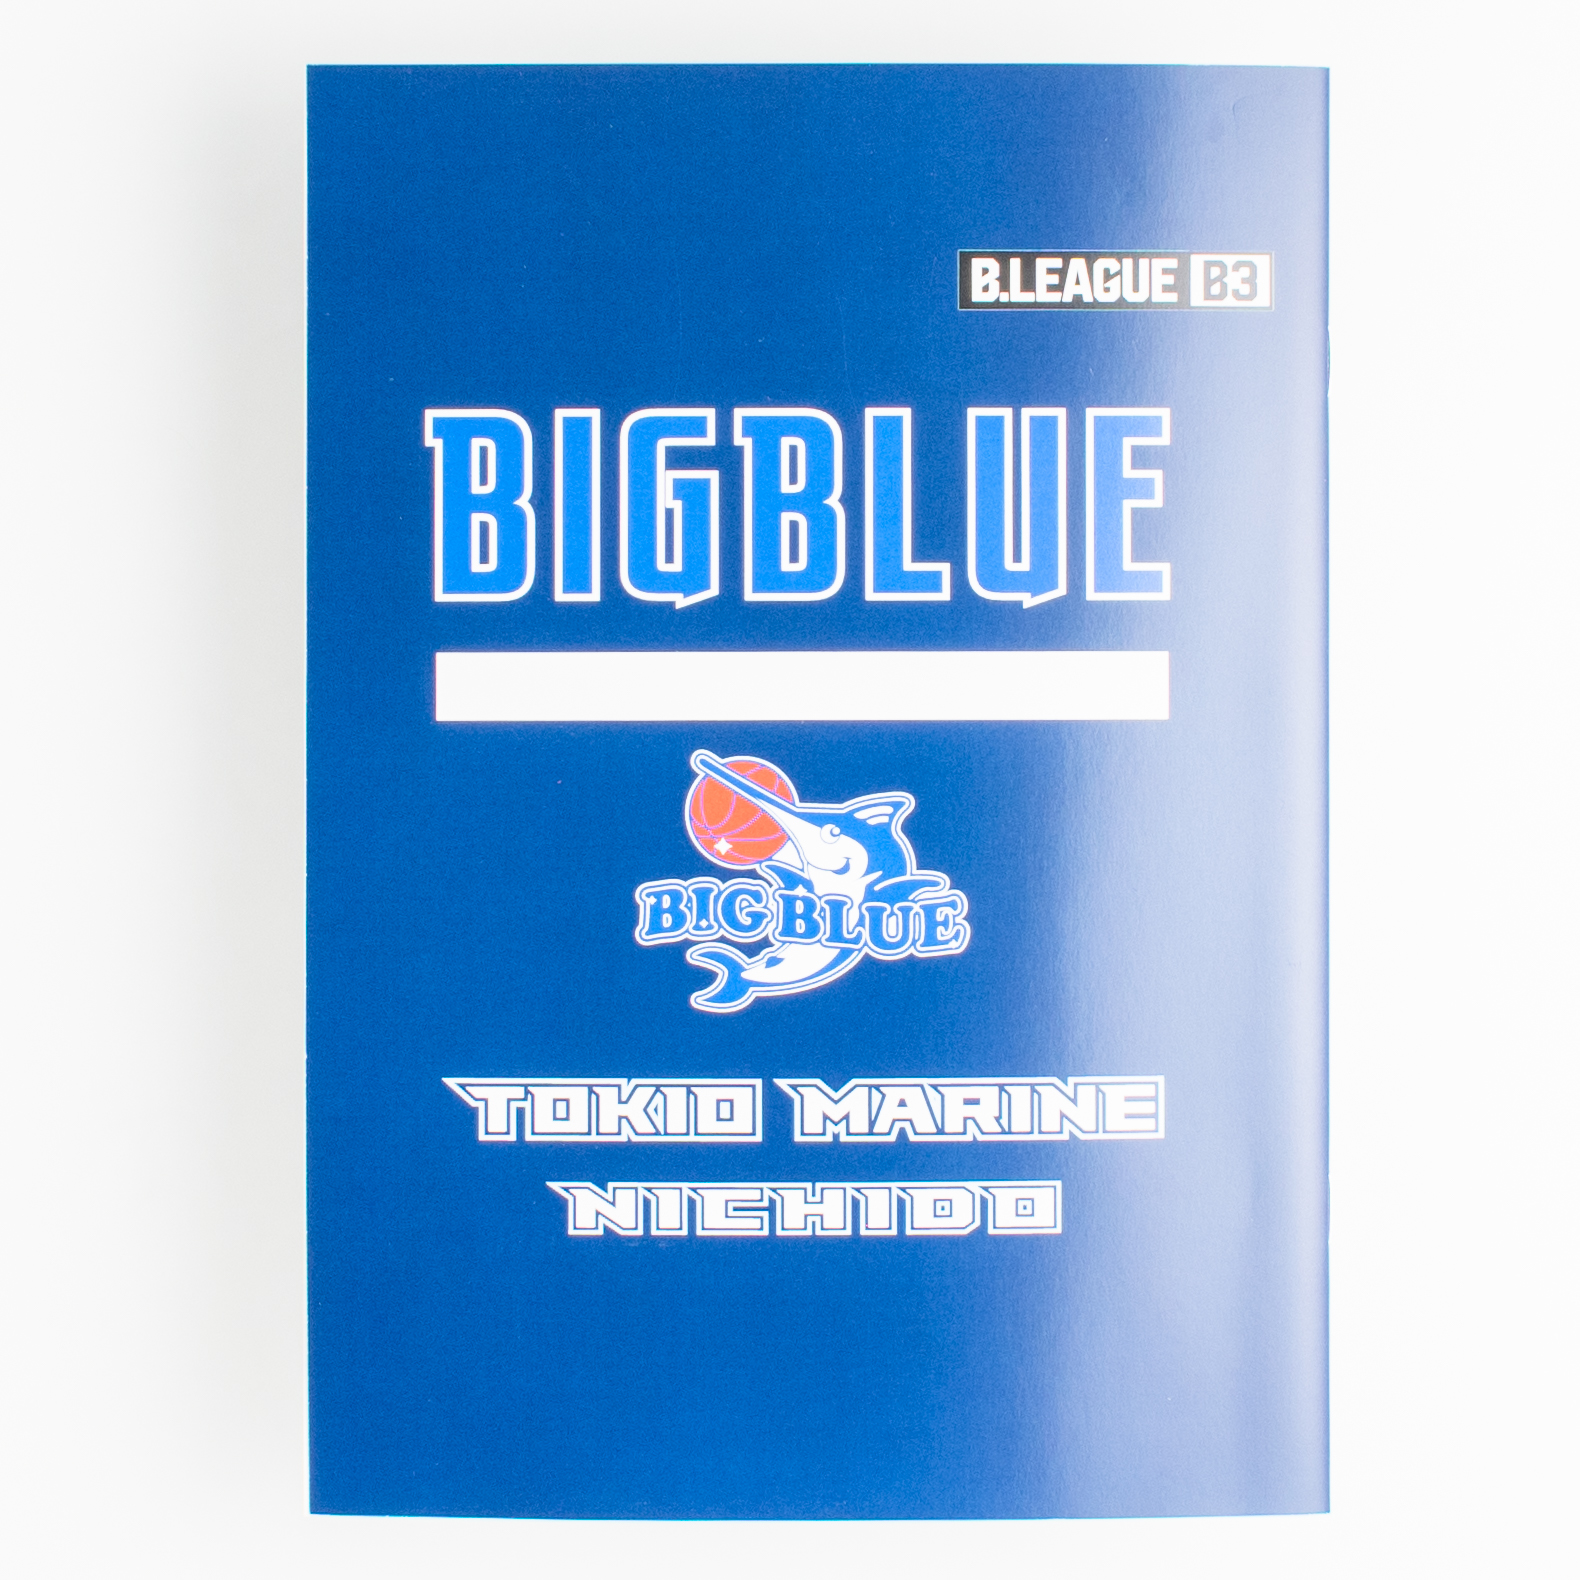 「東京海上日動ビッグブルー 様」製作のオリジナルノート